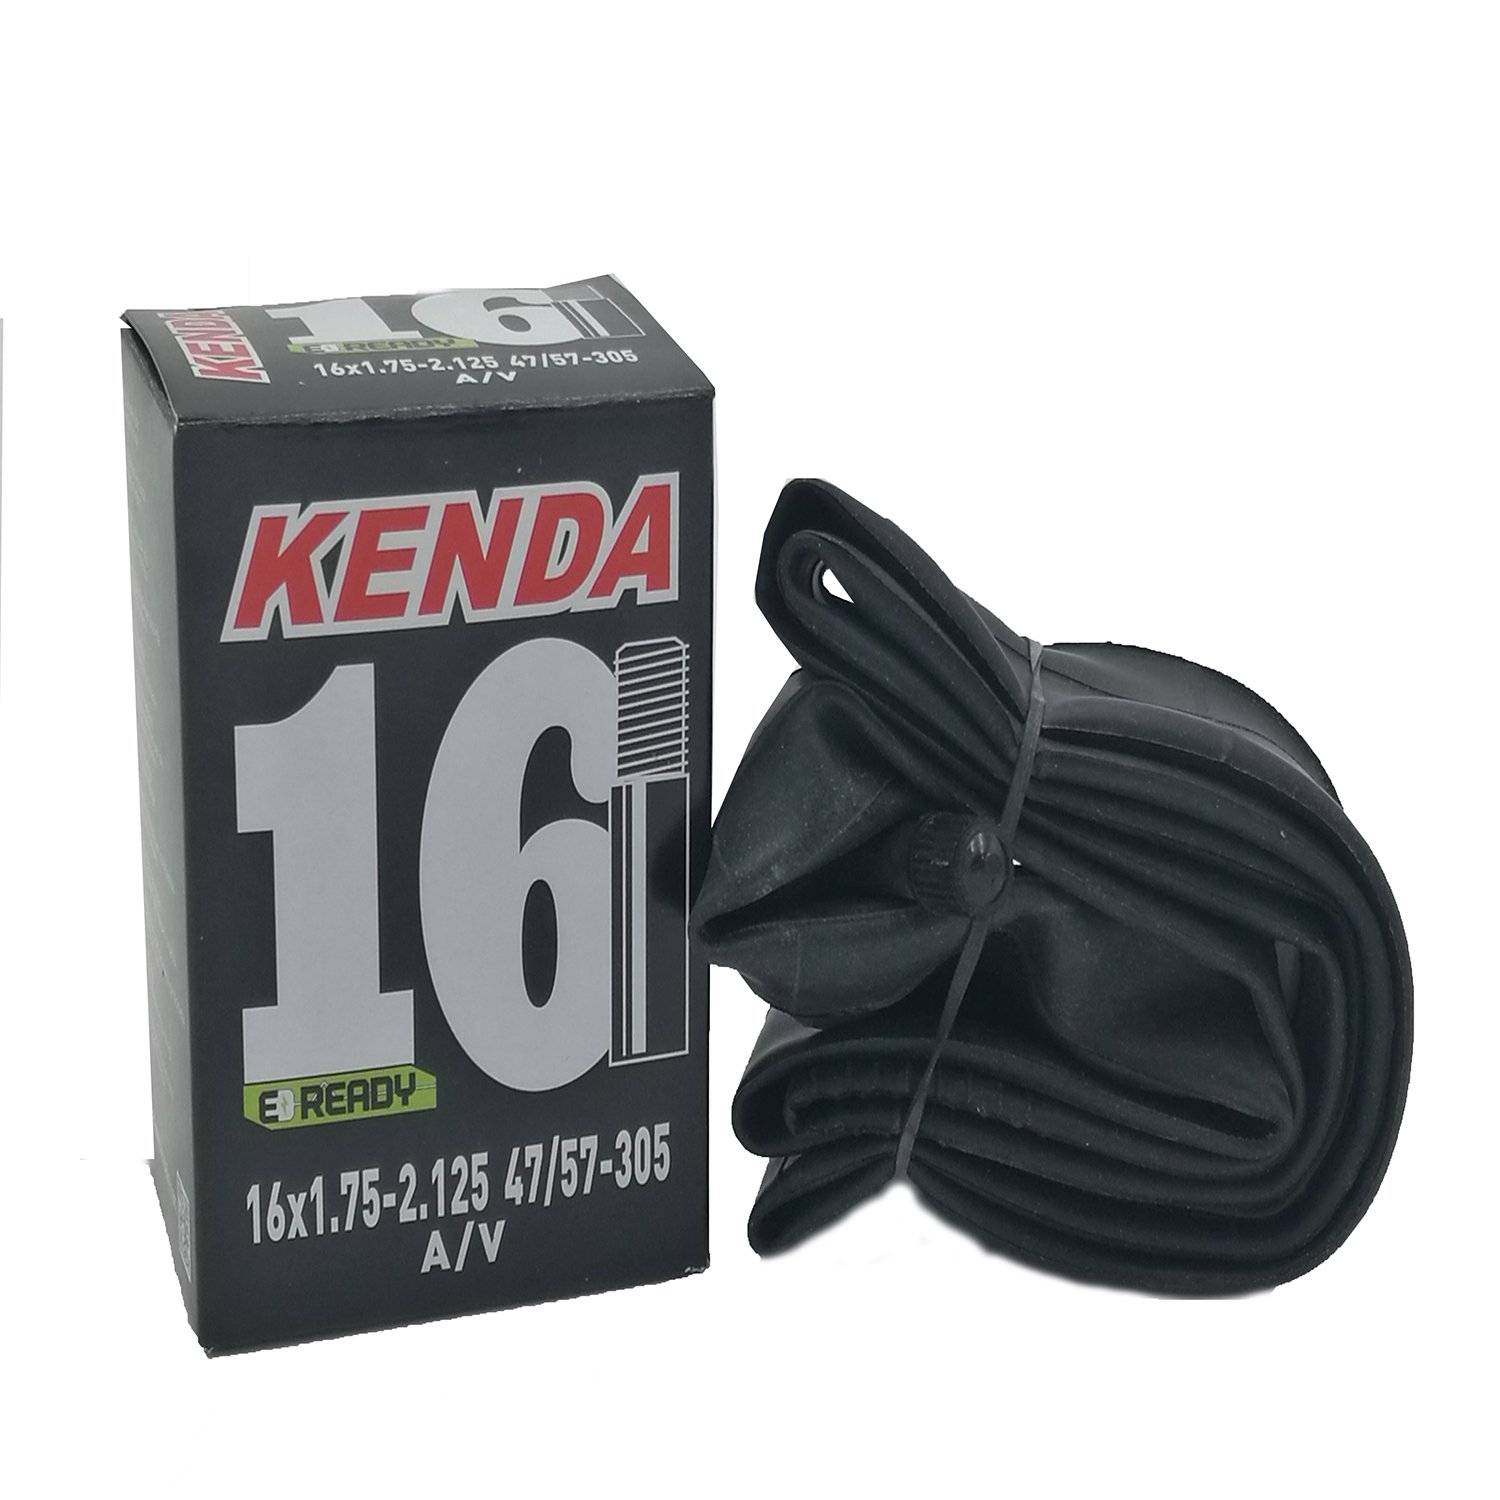 Камера велосипедная KENDA, 16х1.75-2.125 (47/57-305), автониппель, 5-511303